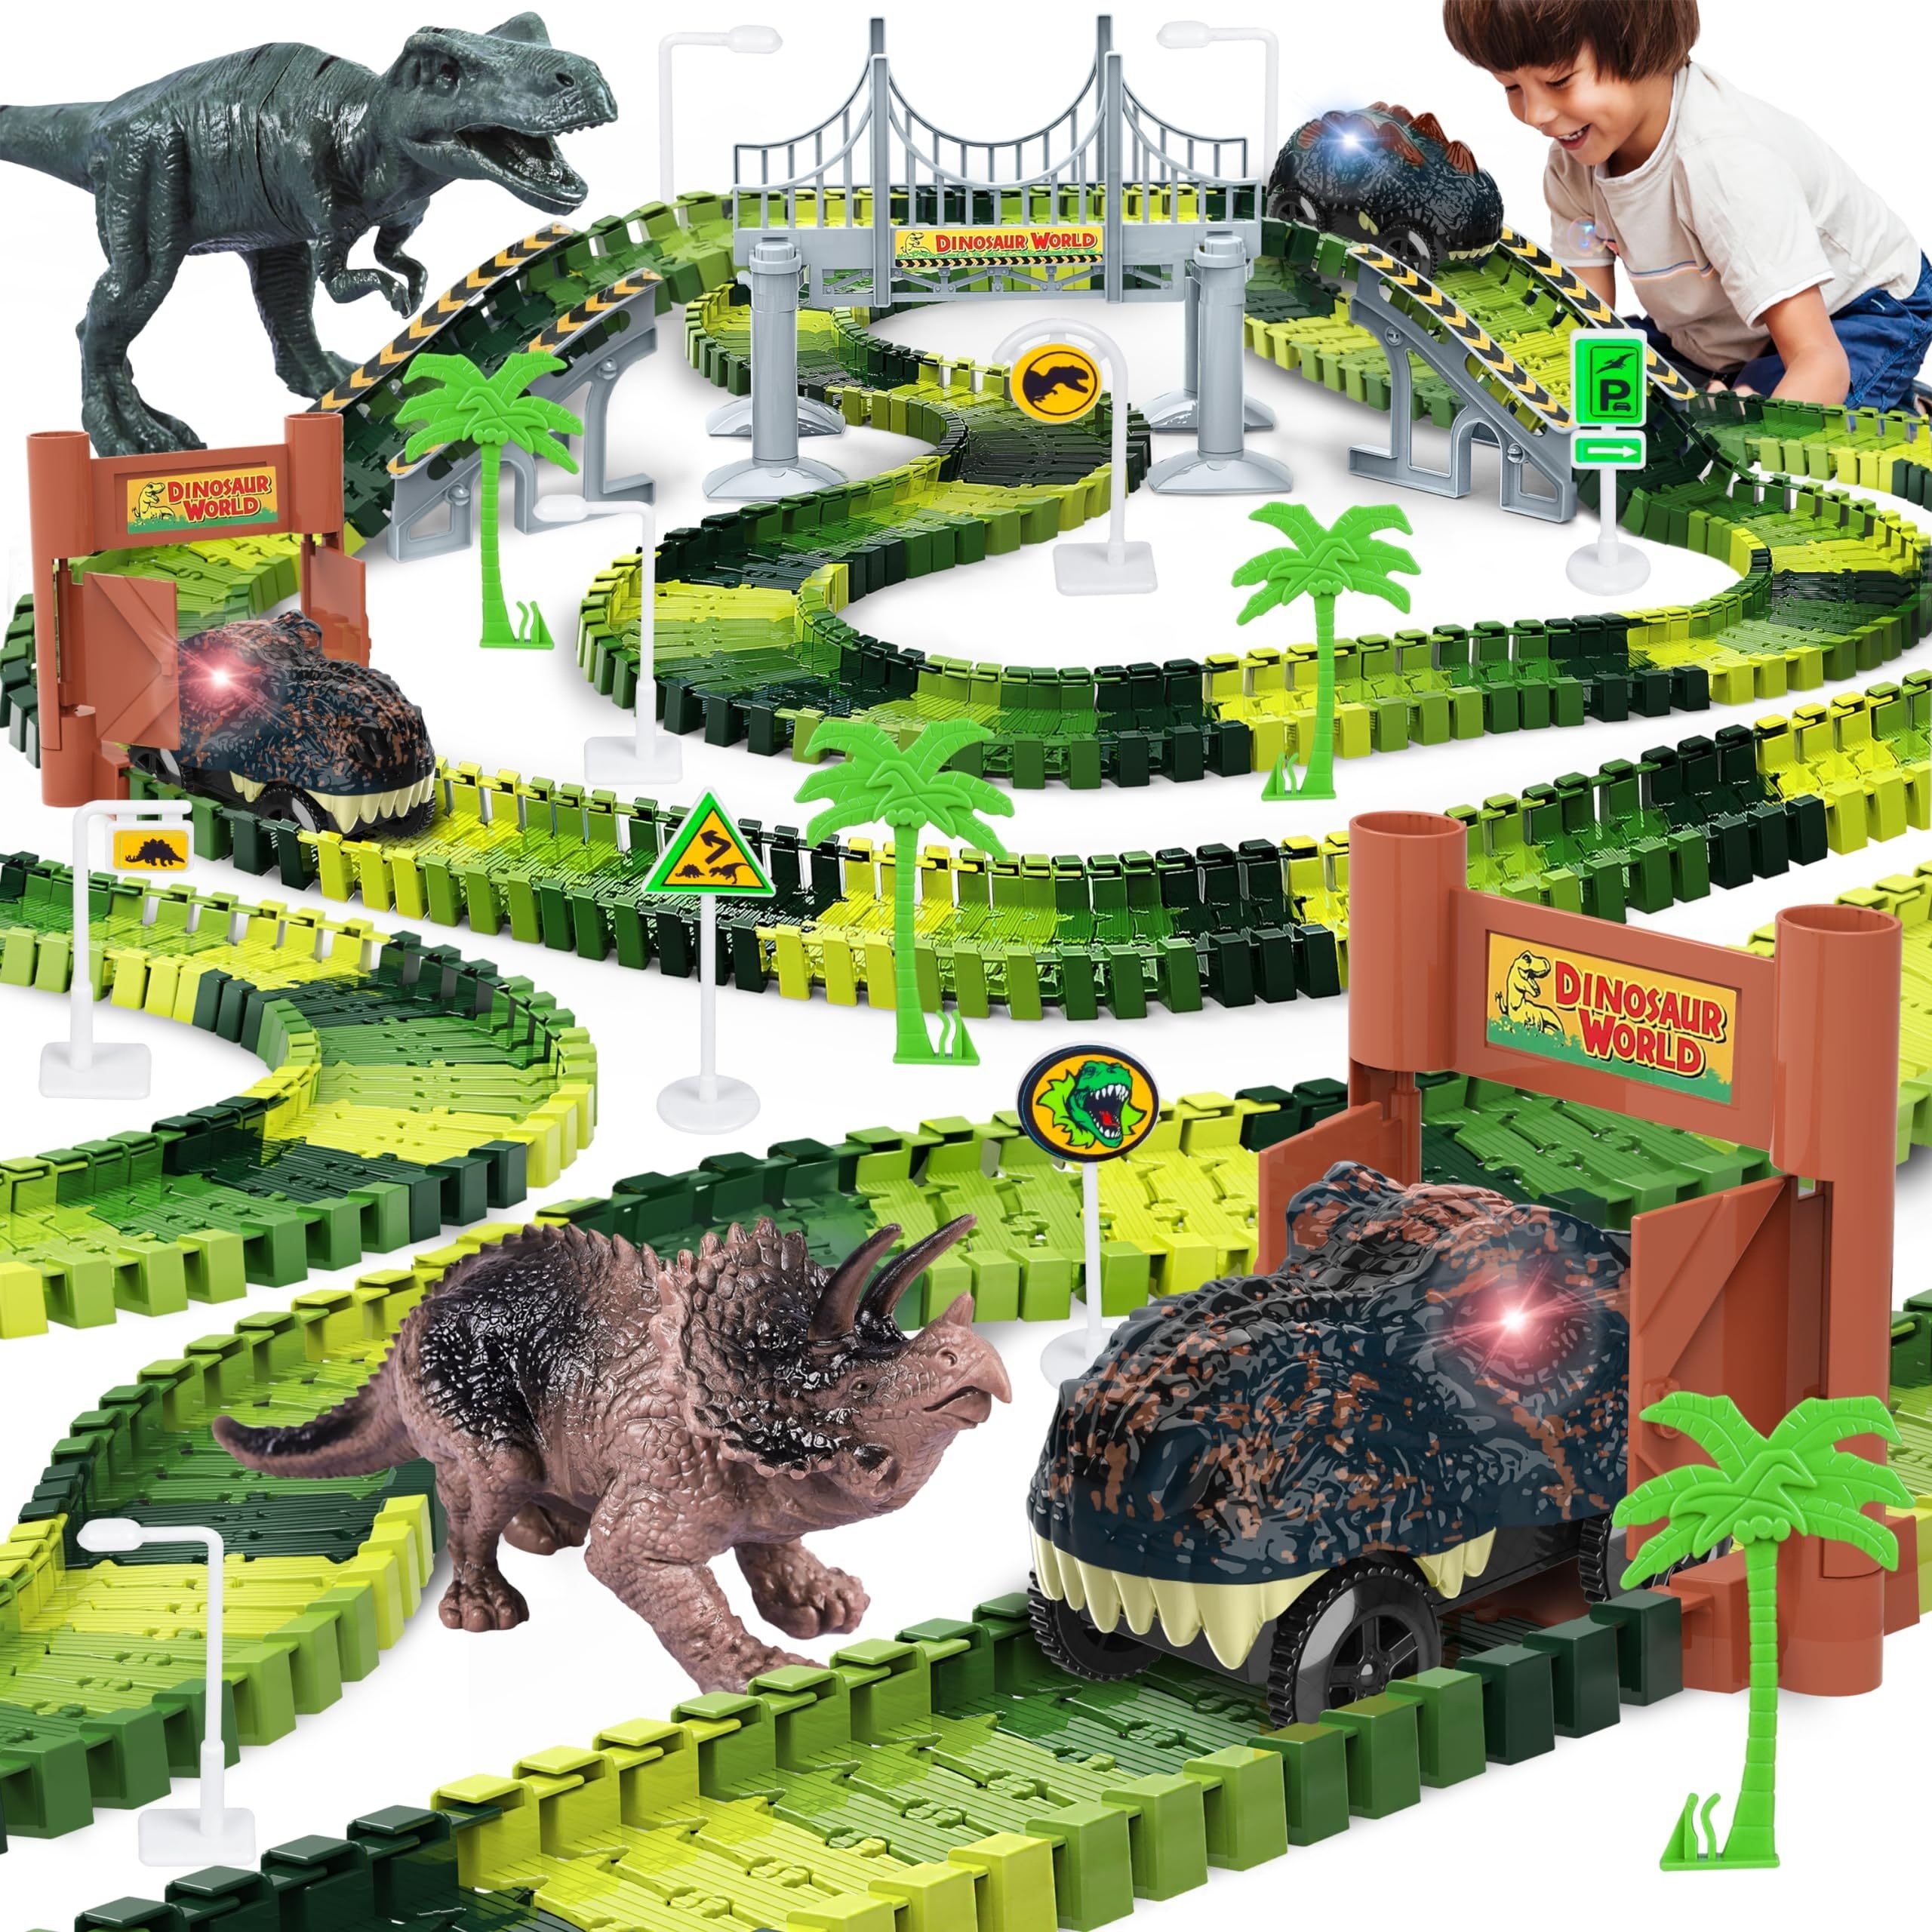 Los mejores dinosaurios de juguete